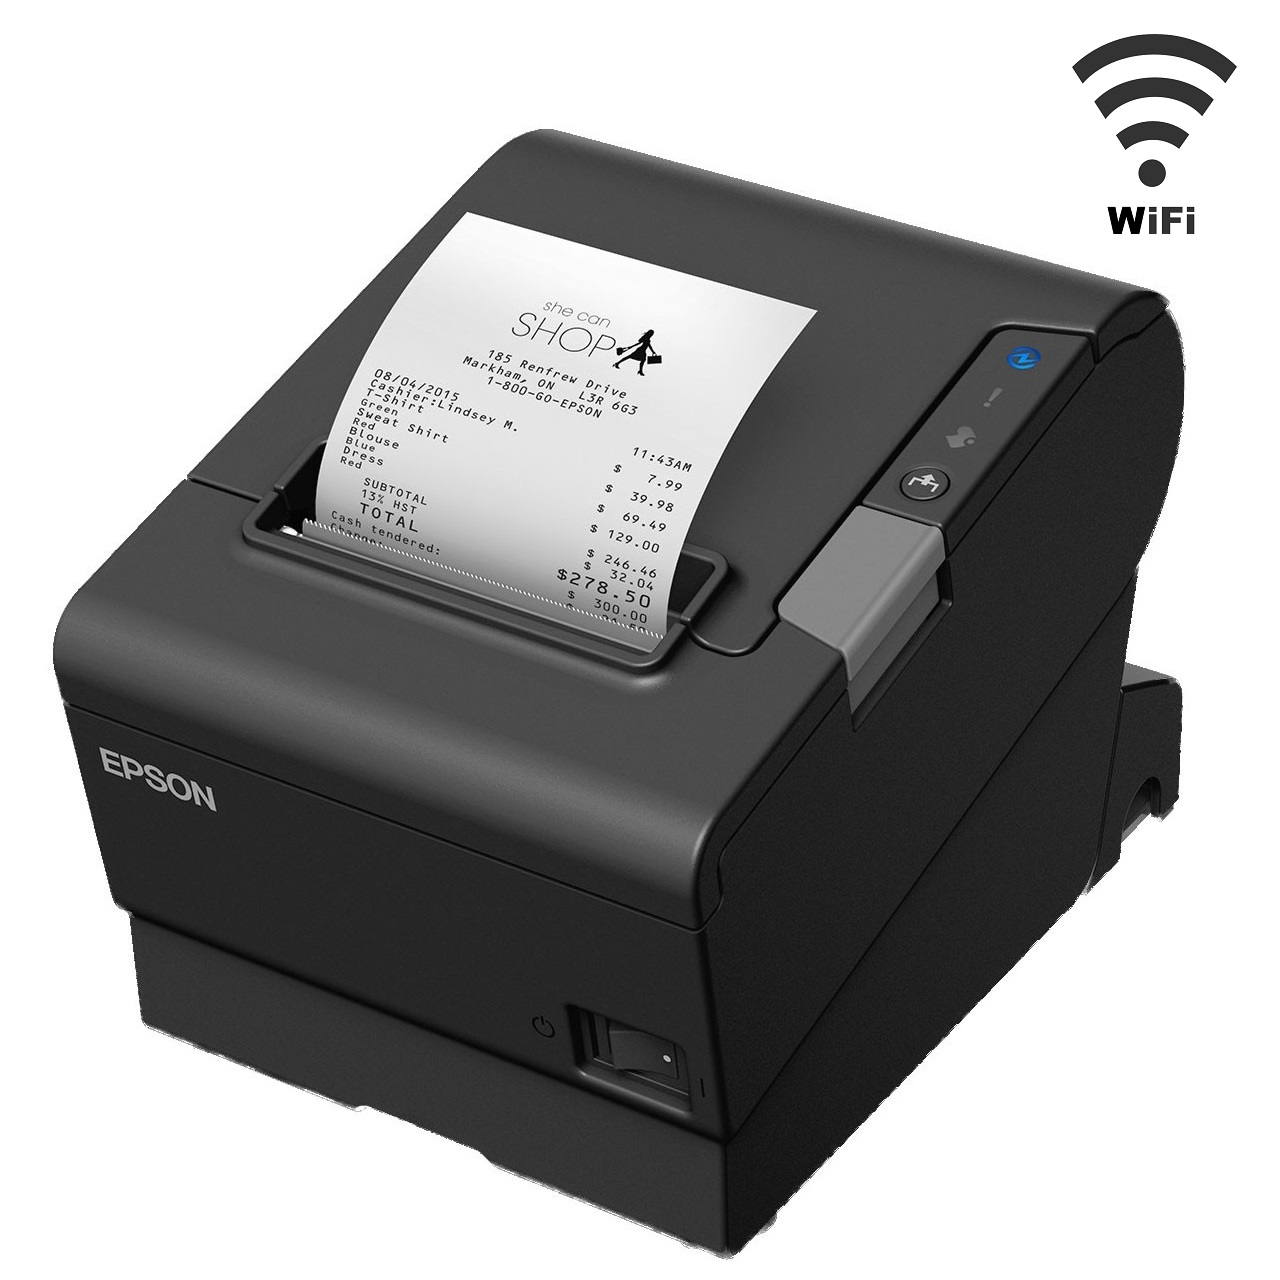 View Epson TM-T88VI Wireless Thermal Receipt Printer